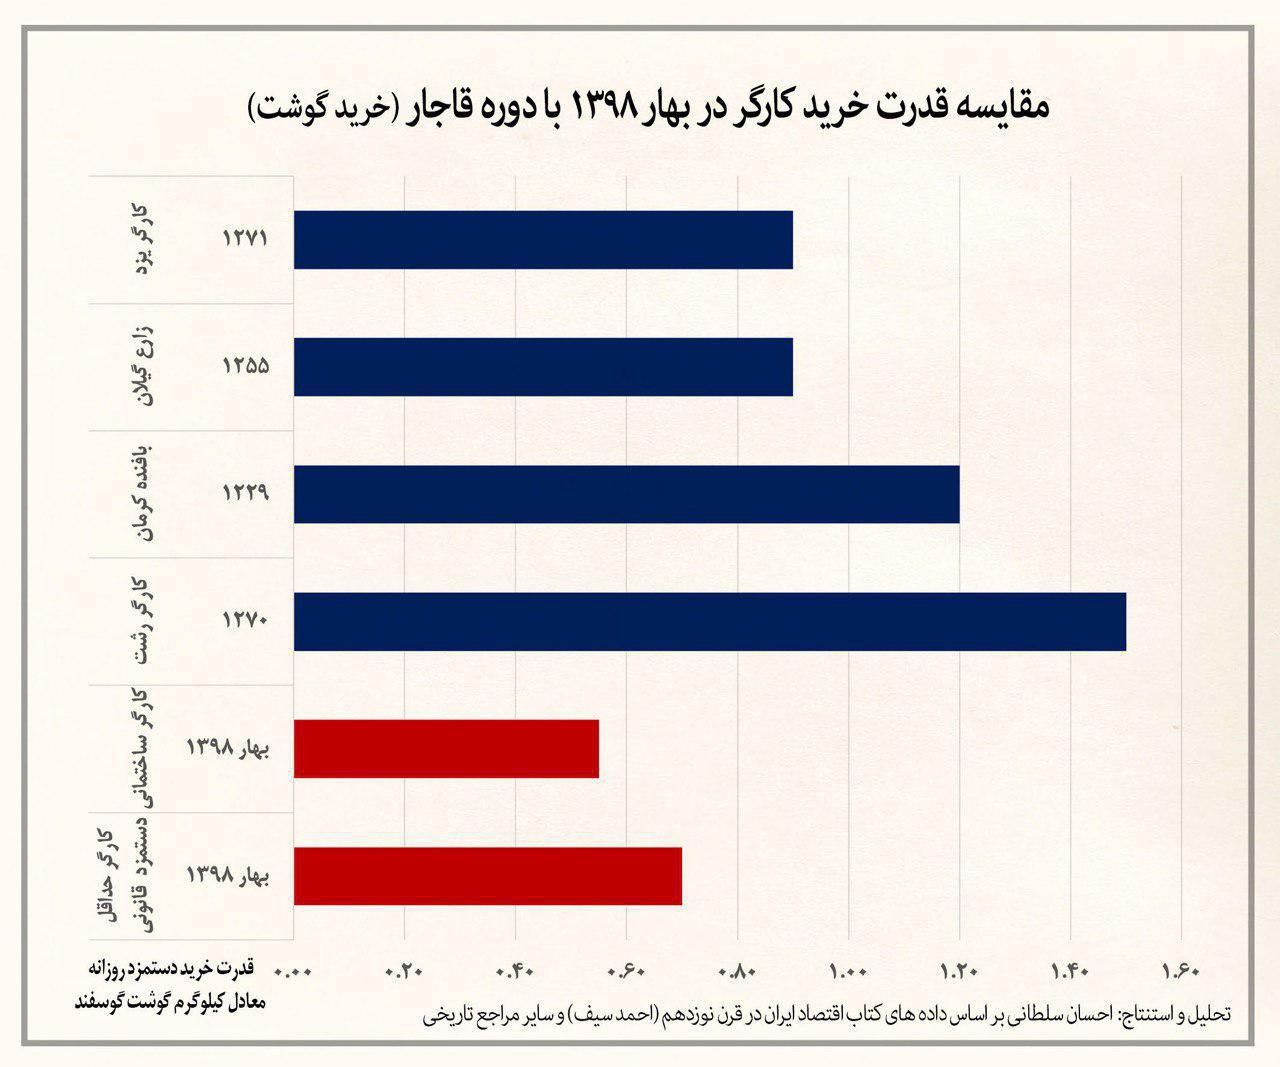 مردم ایران چقدر کالری مصرف می کنند؟